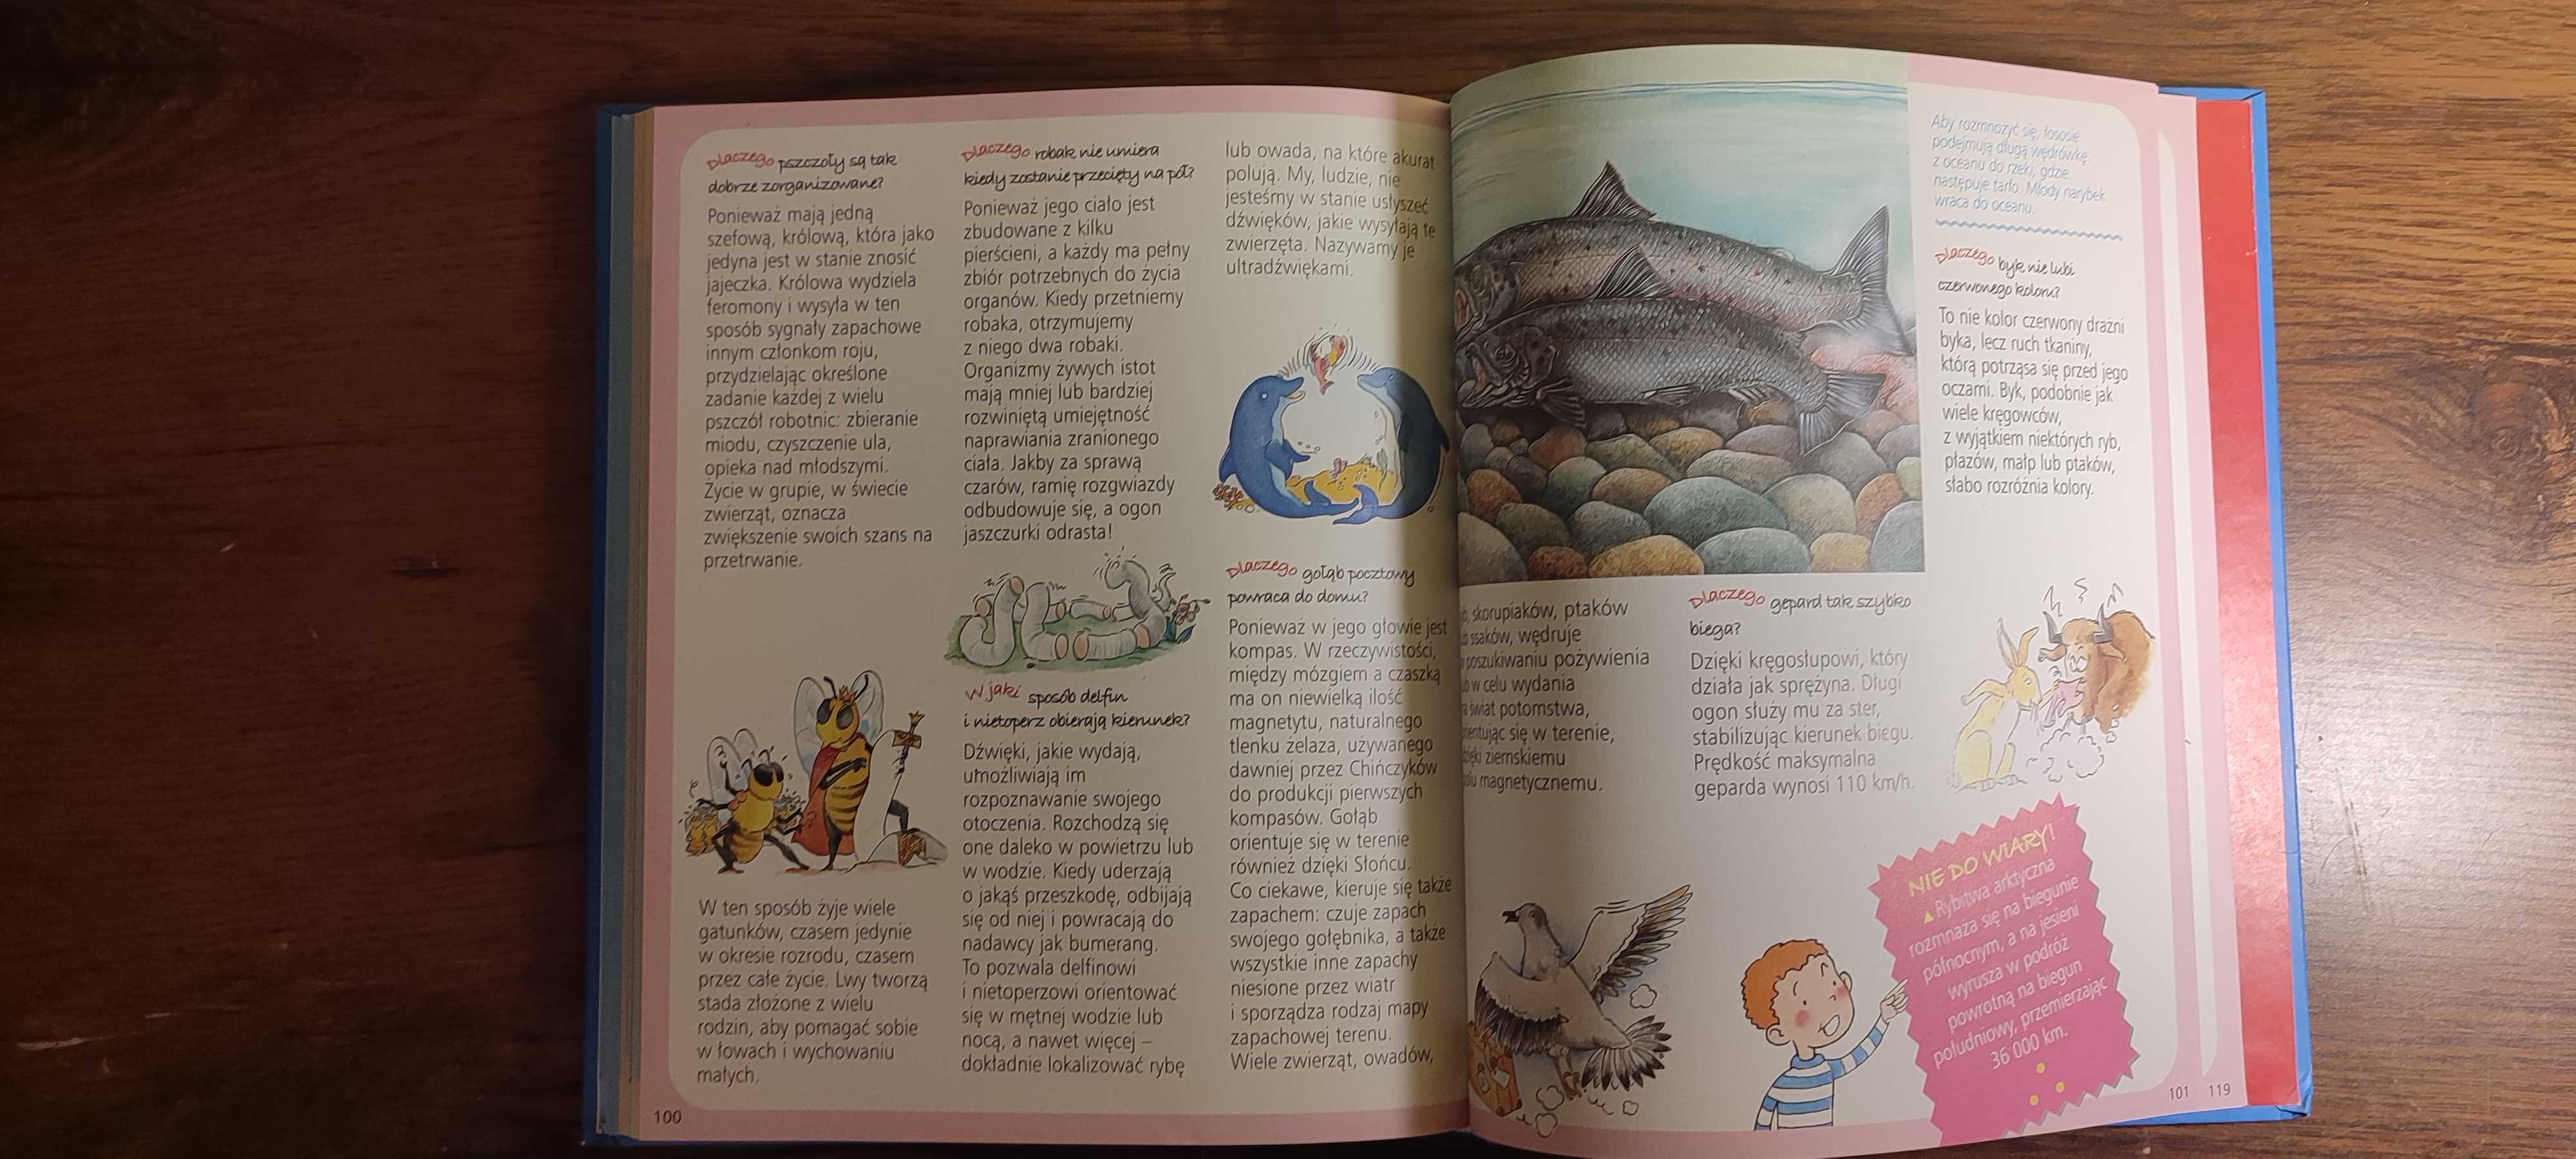 Nauka. Obrazkowa encyklopedia dla dzieci